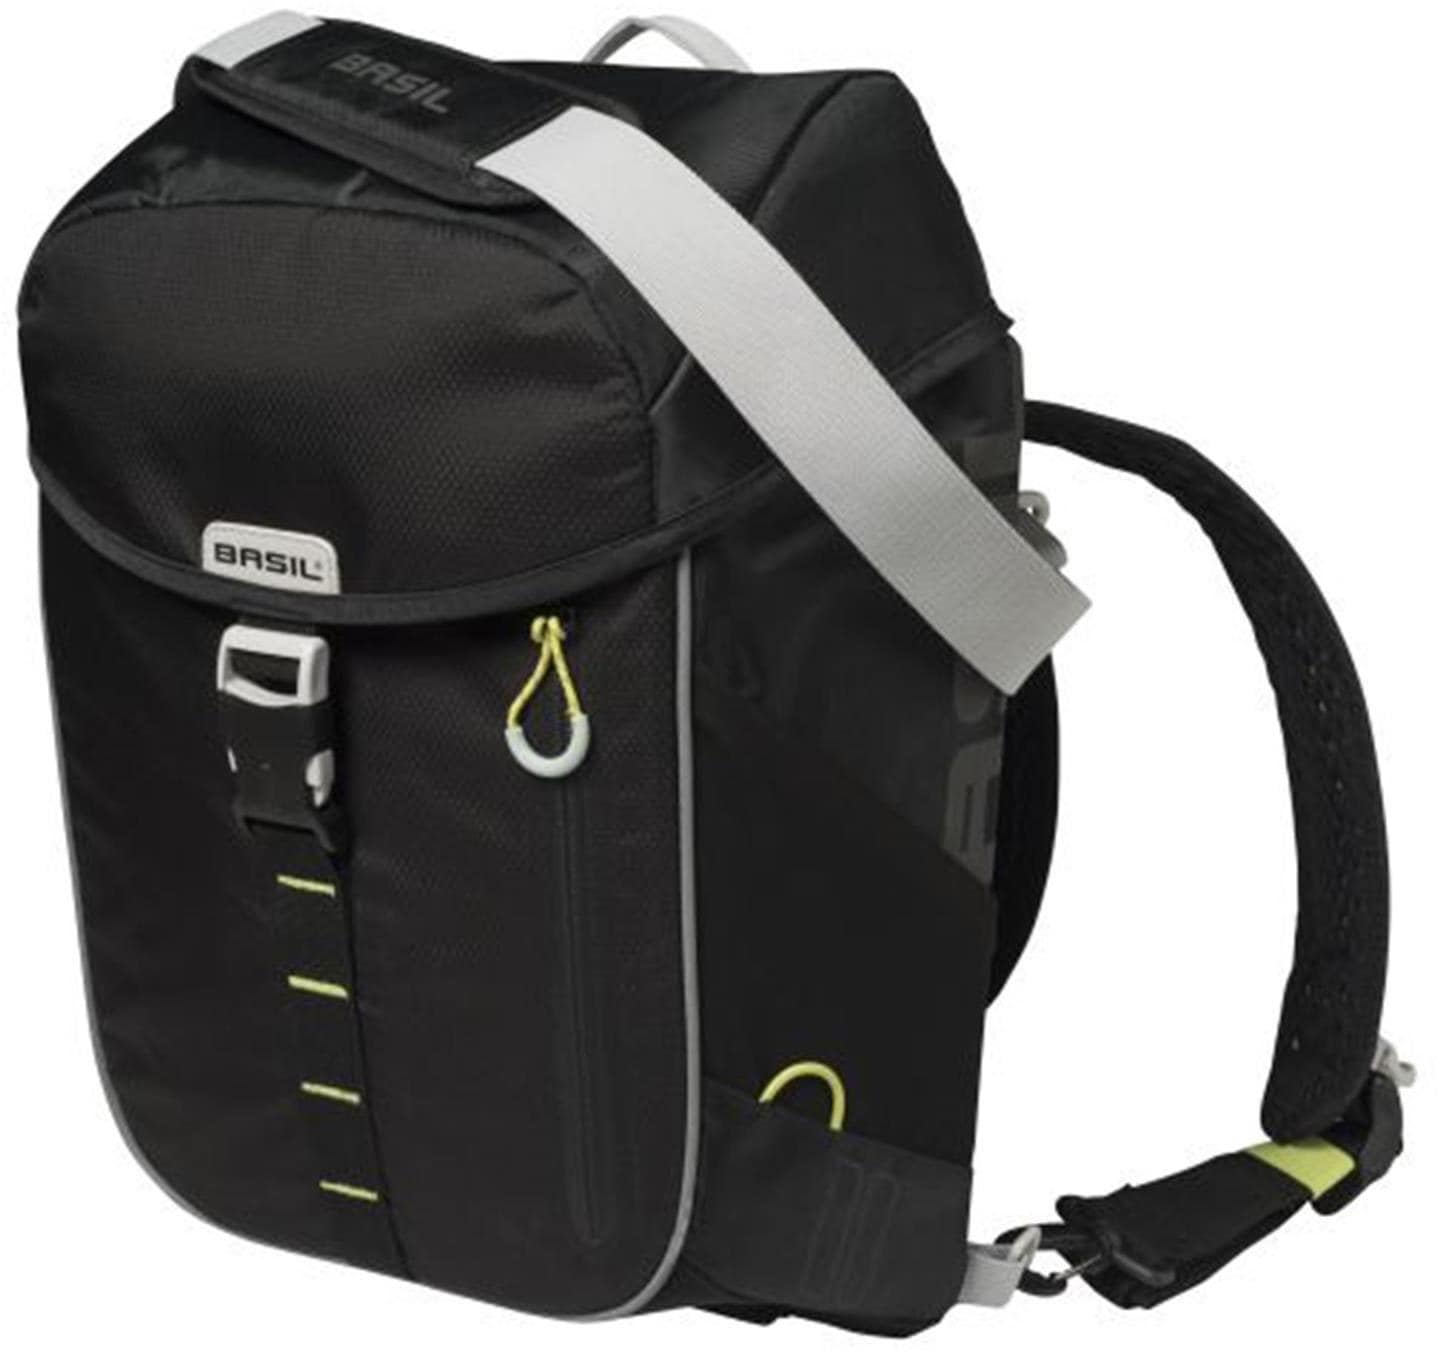 Basil Gepäckträgertasche »Miles Daypack« online kaufen